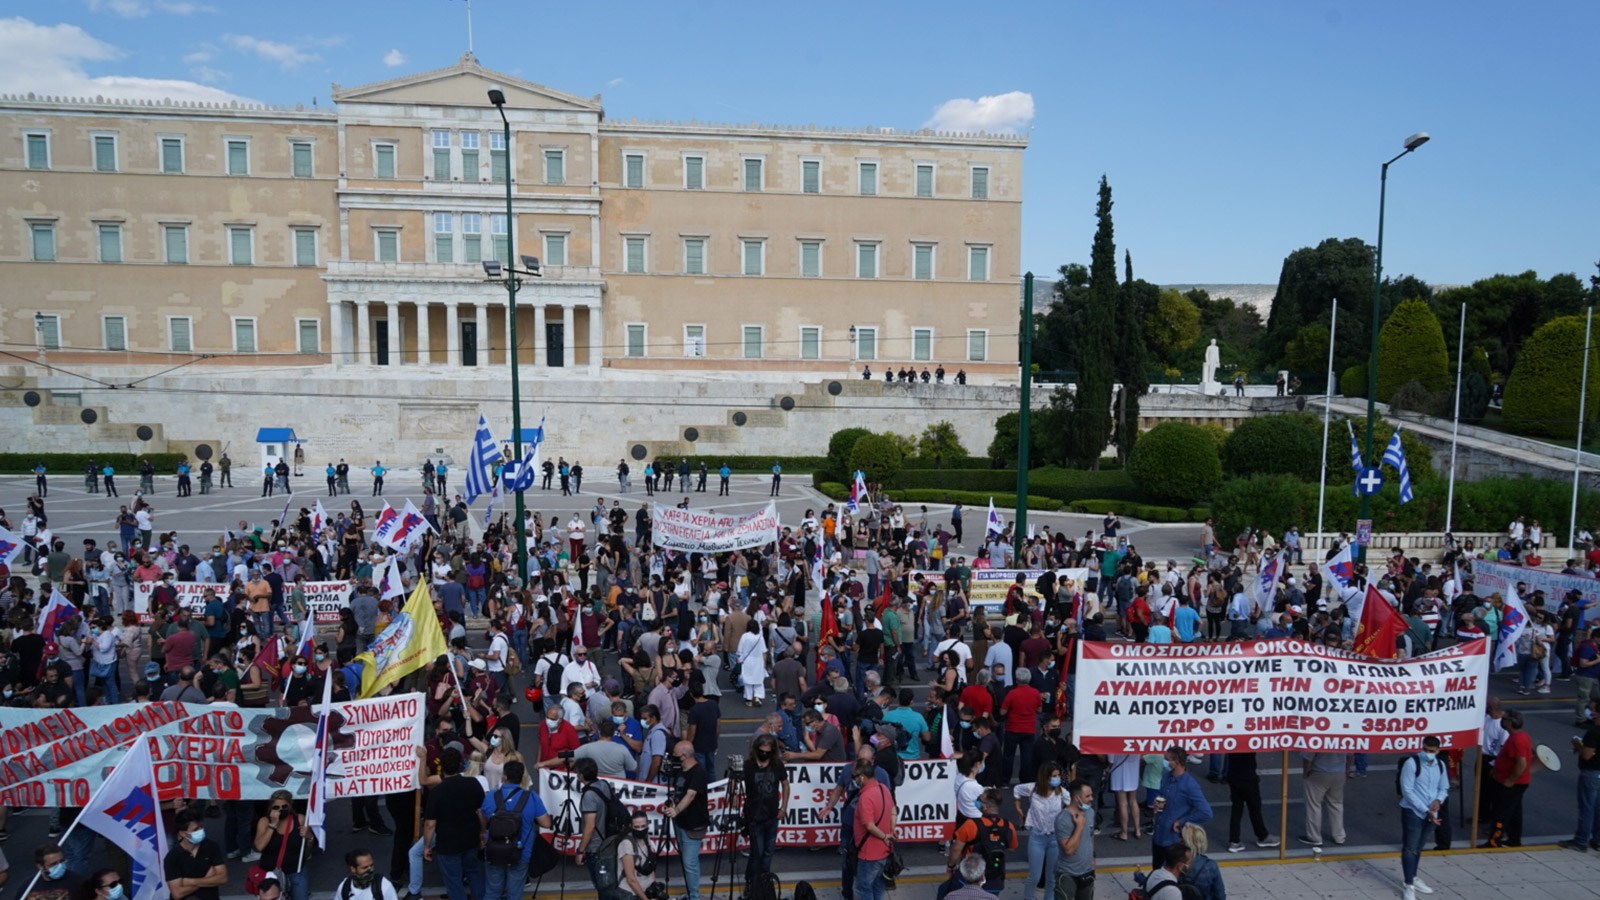 Απεργία: Νέο συλλαλητήριο στο Σύνταγμα ενάντια στο εργασιακό νομοσχέδιο